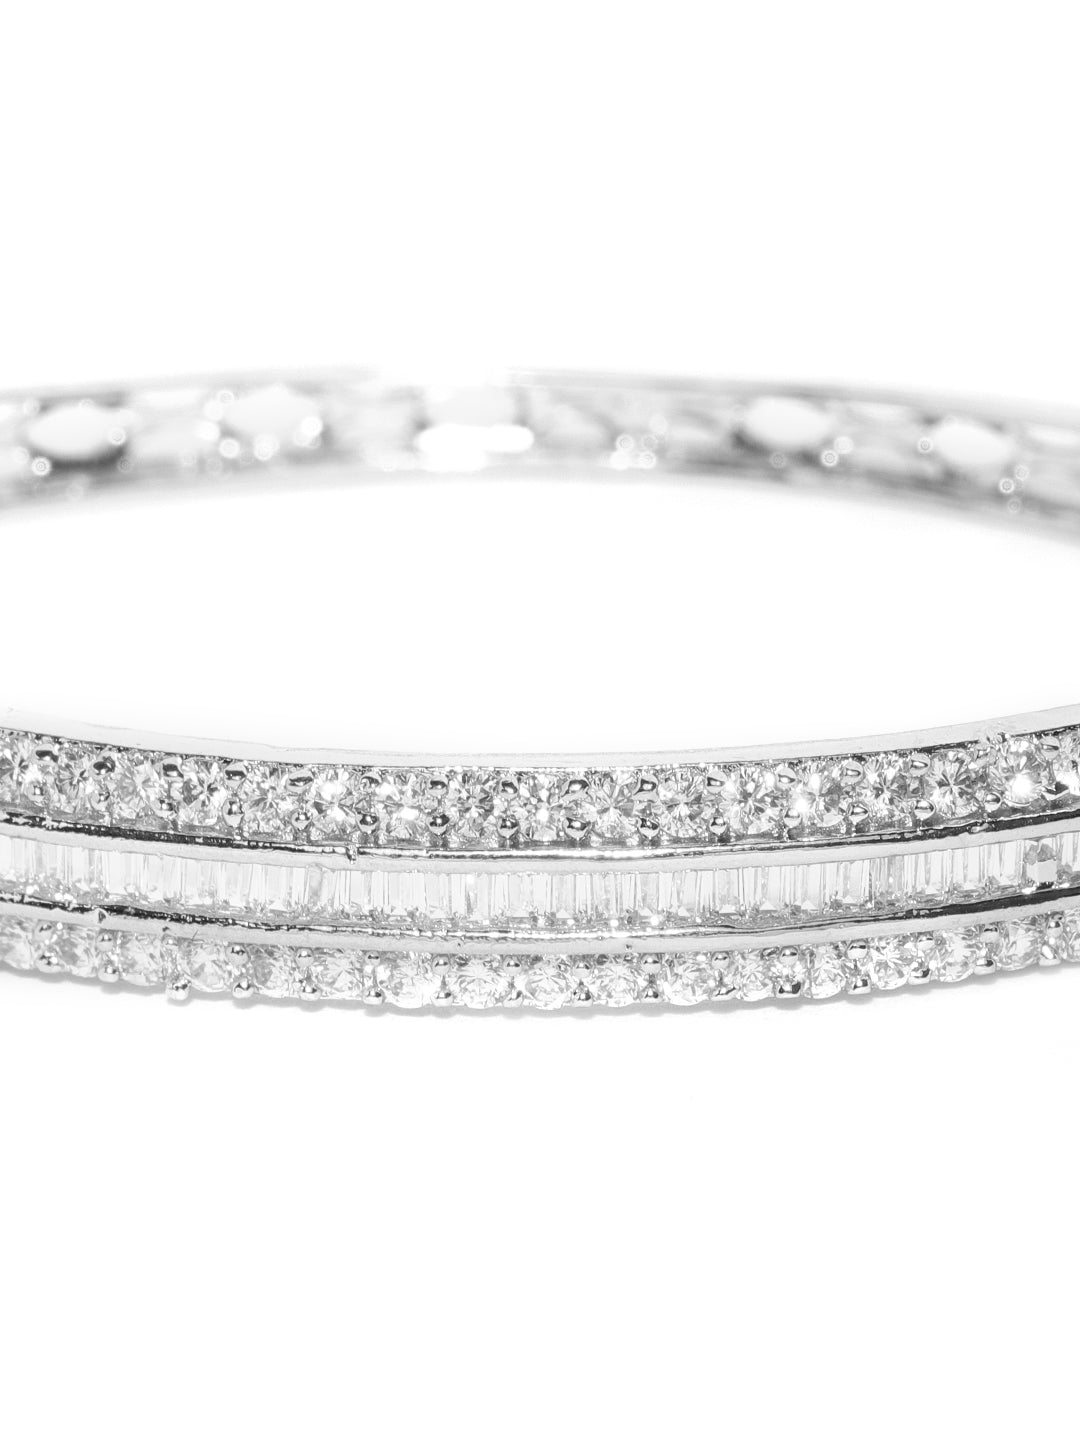 70 ct. t.w. Diamond-Studded Bangle Bracelet in 18kt Gold Over Sterling |  Ross-Simons